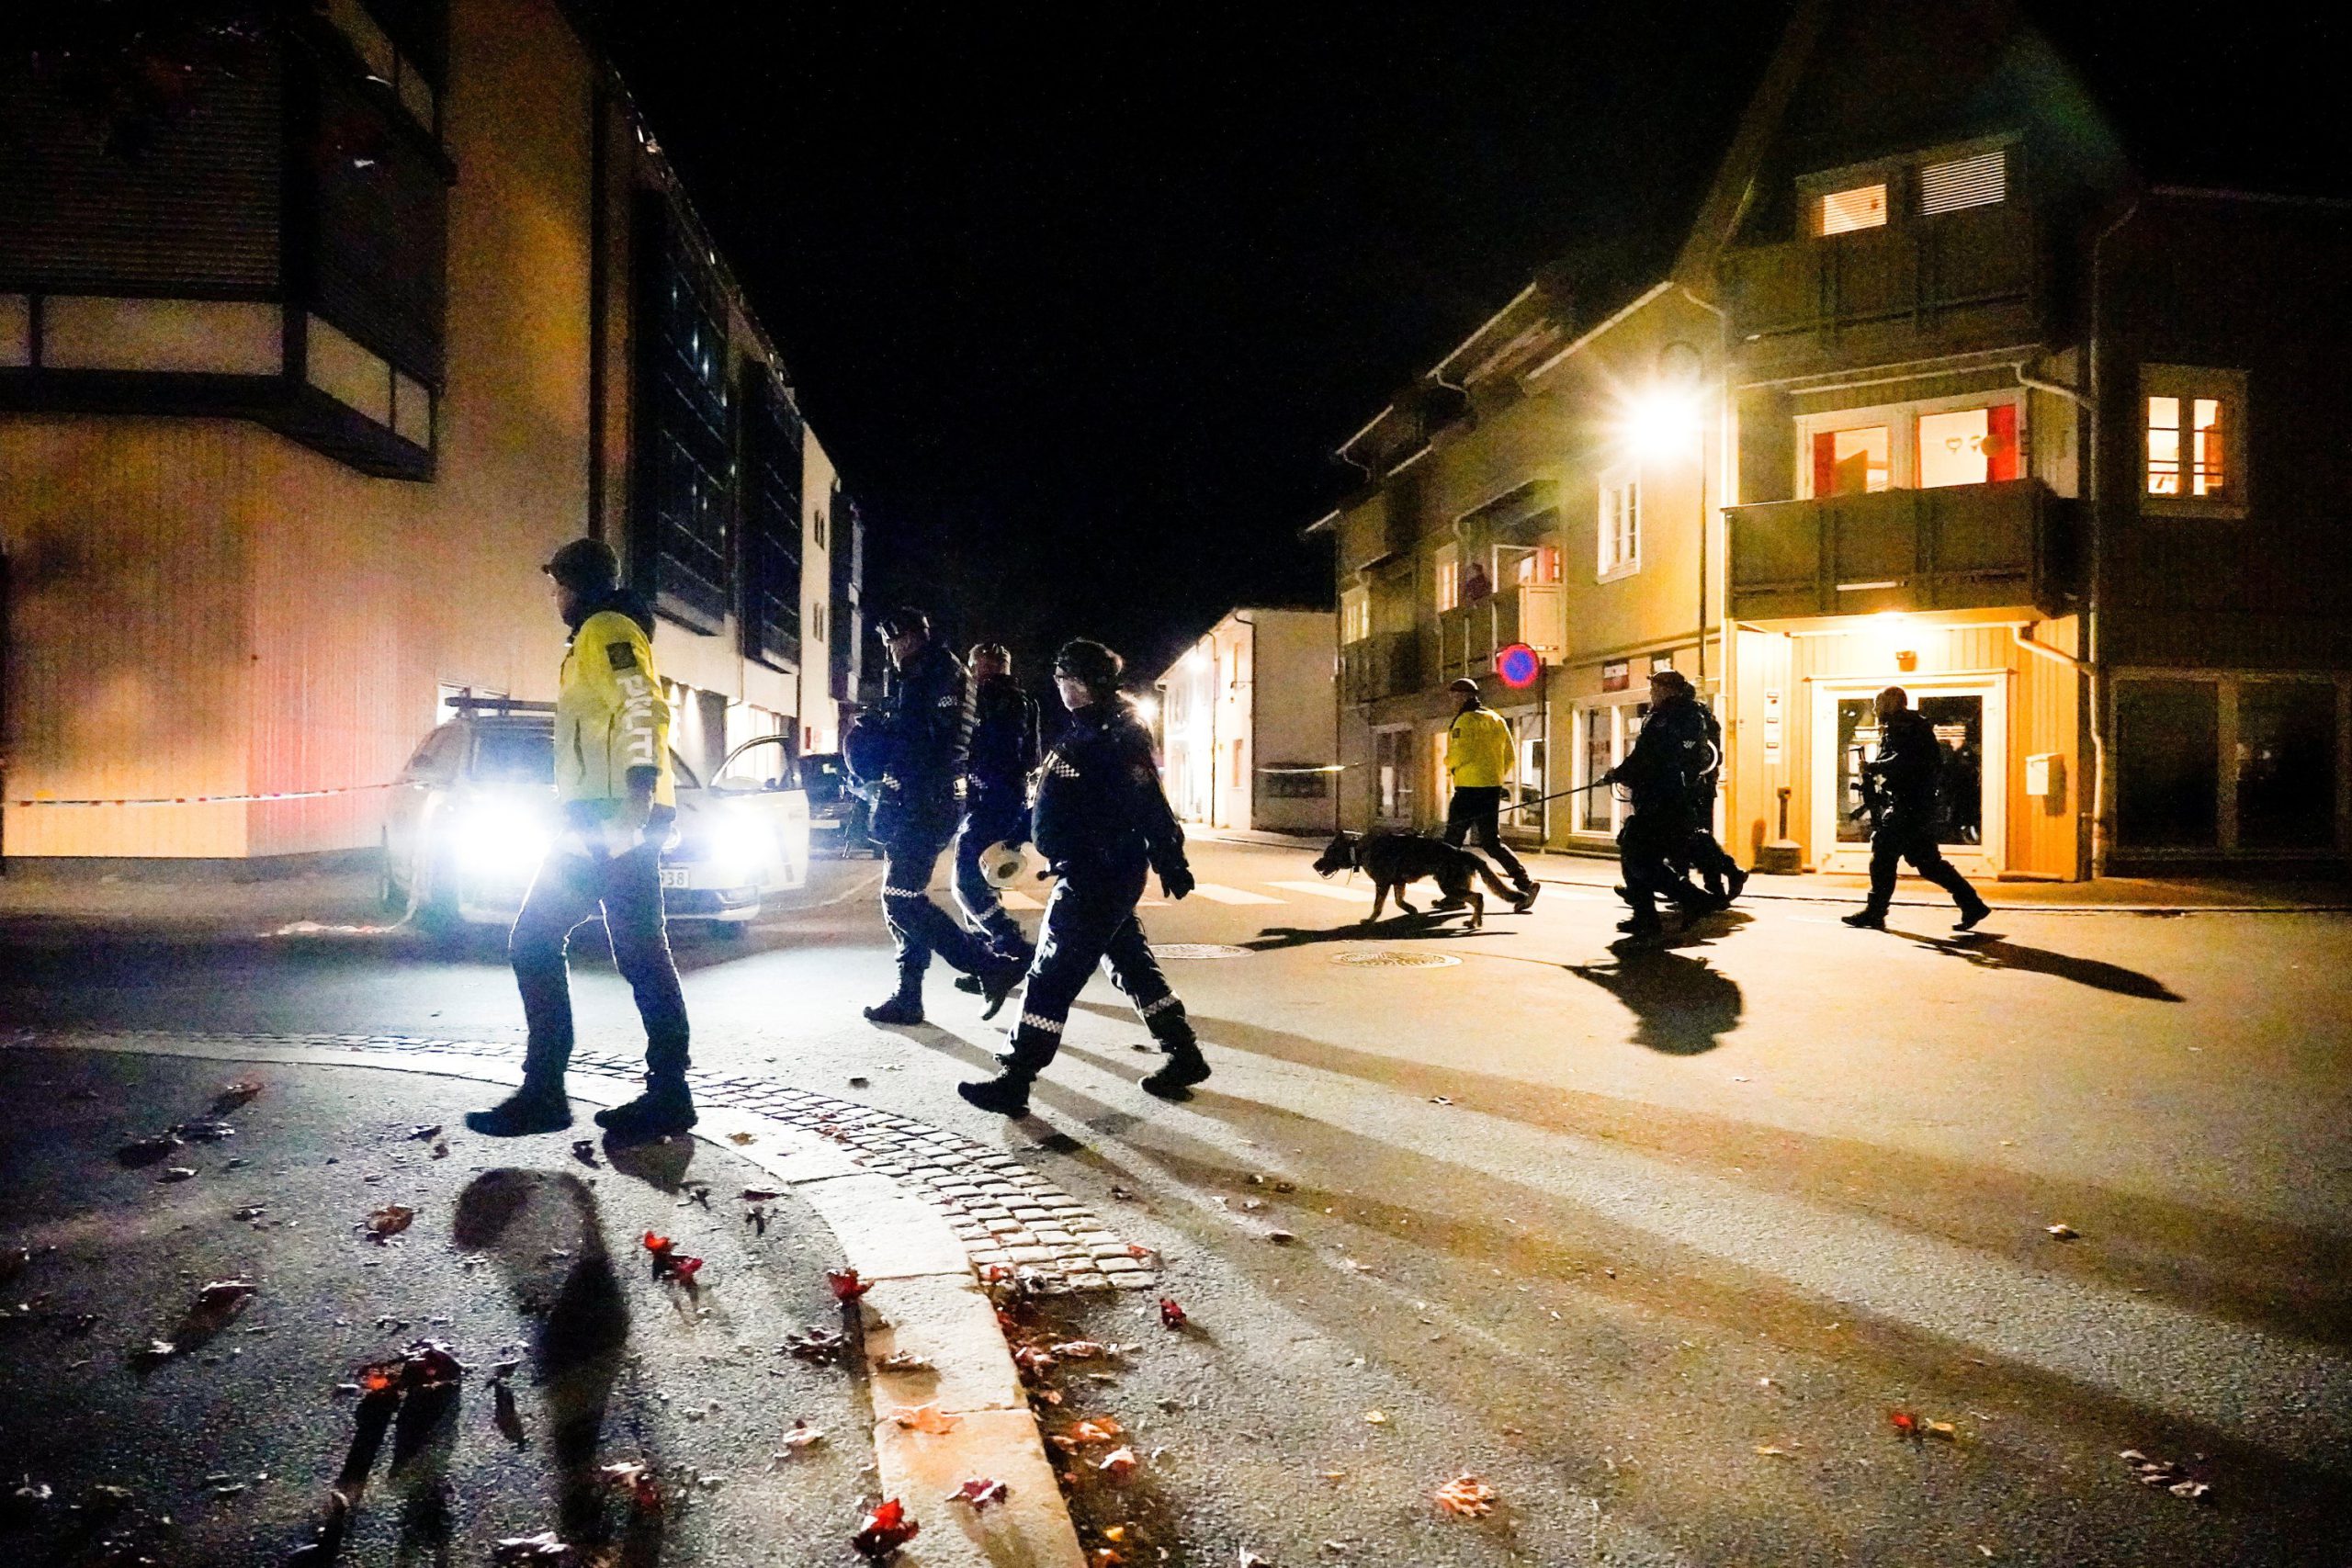  Mai mulți morți și răniți, după un atac cu un arc și săgeți, în Norvegia